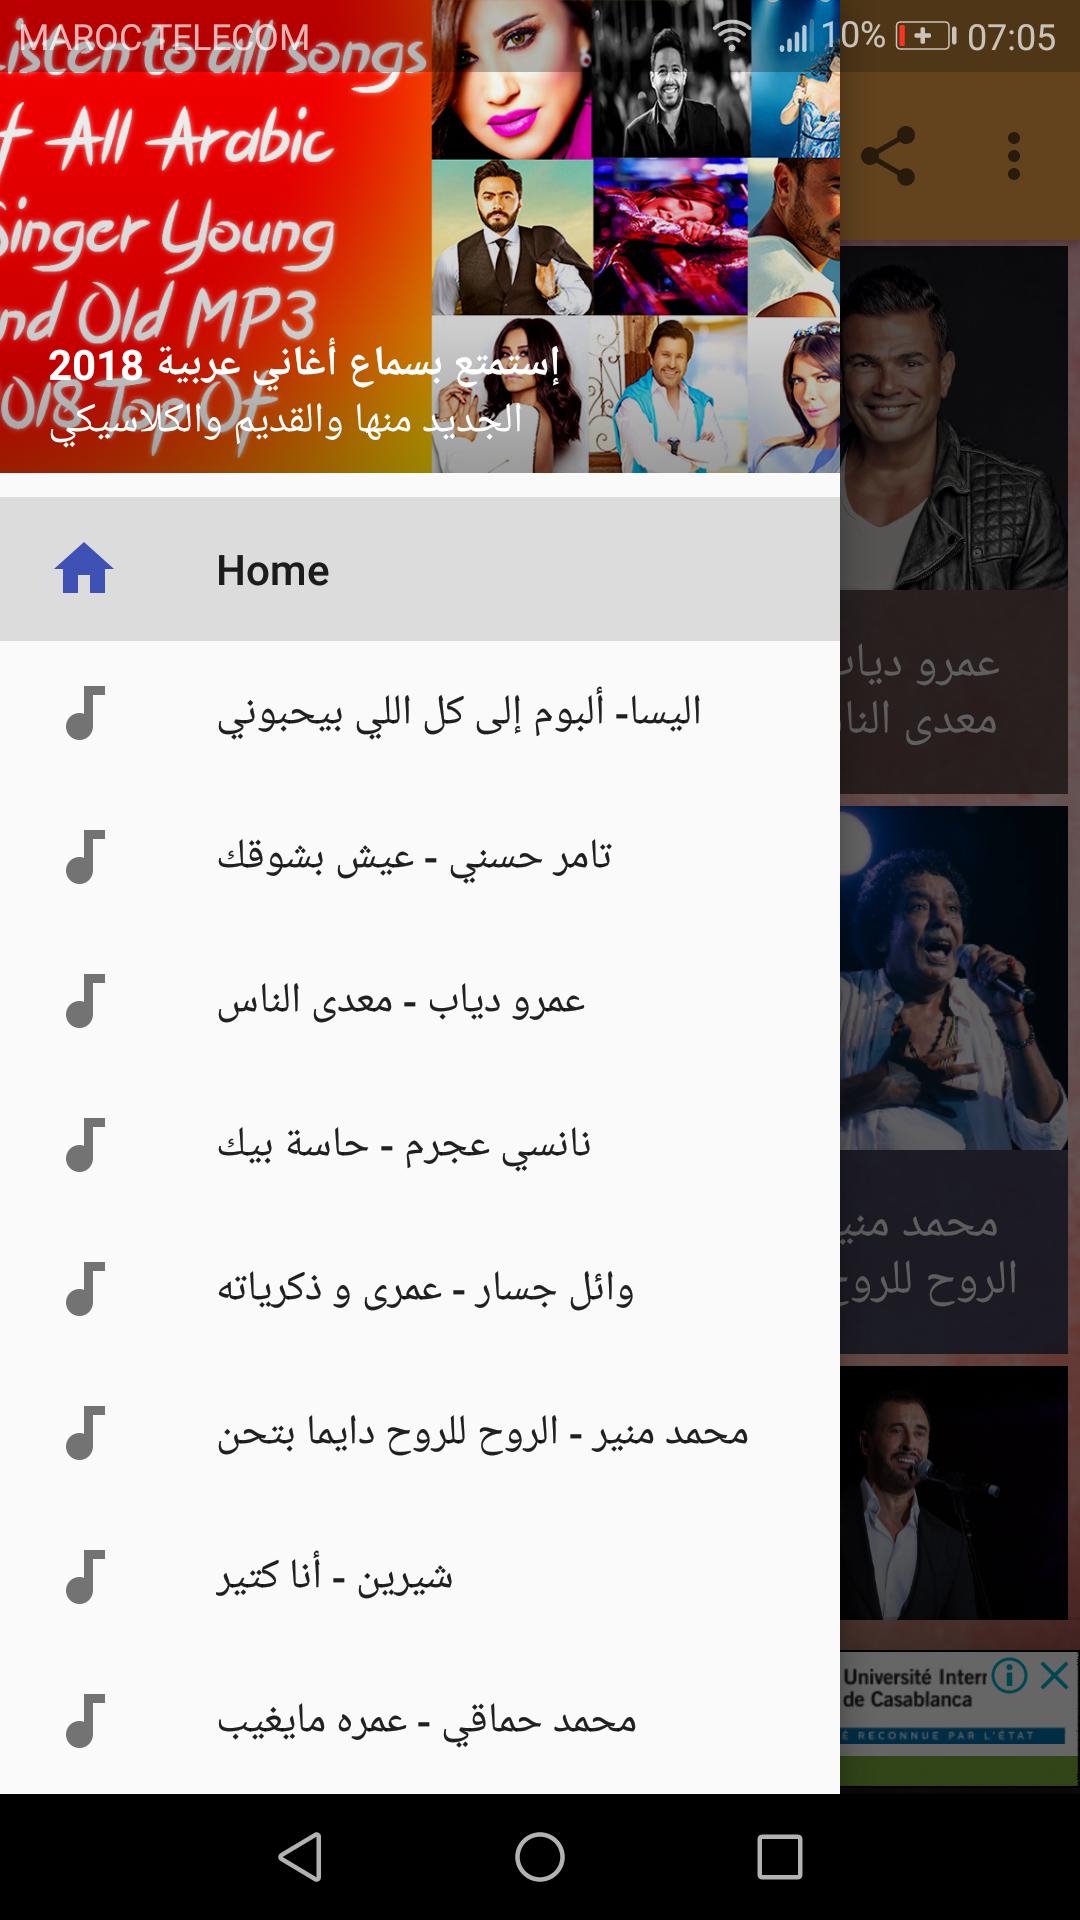 أغاني عربية كلاسيكية 2018 بدون انترنت APK untuk Unduhan Android